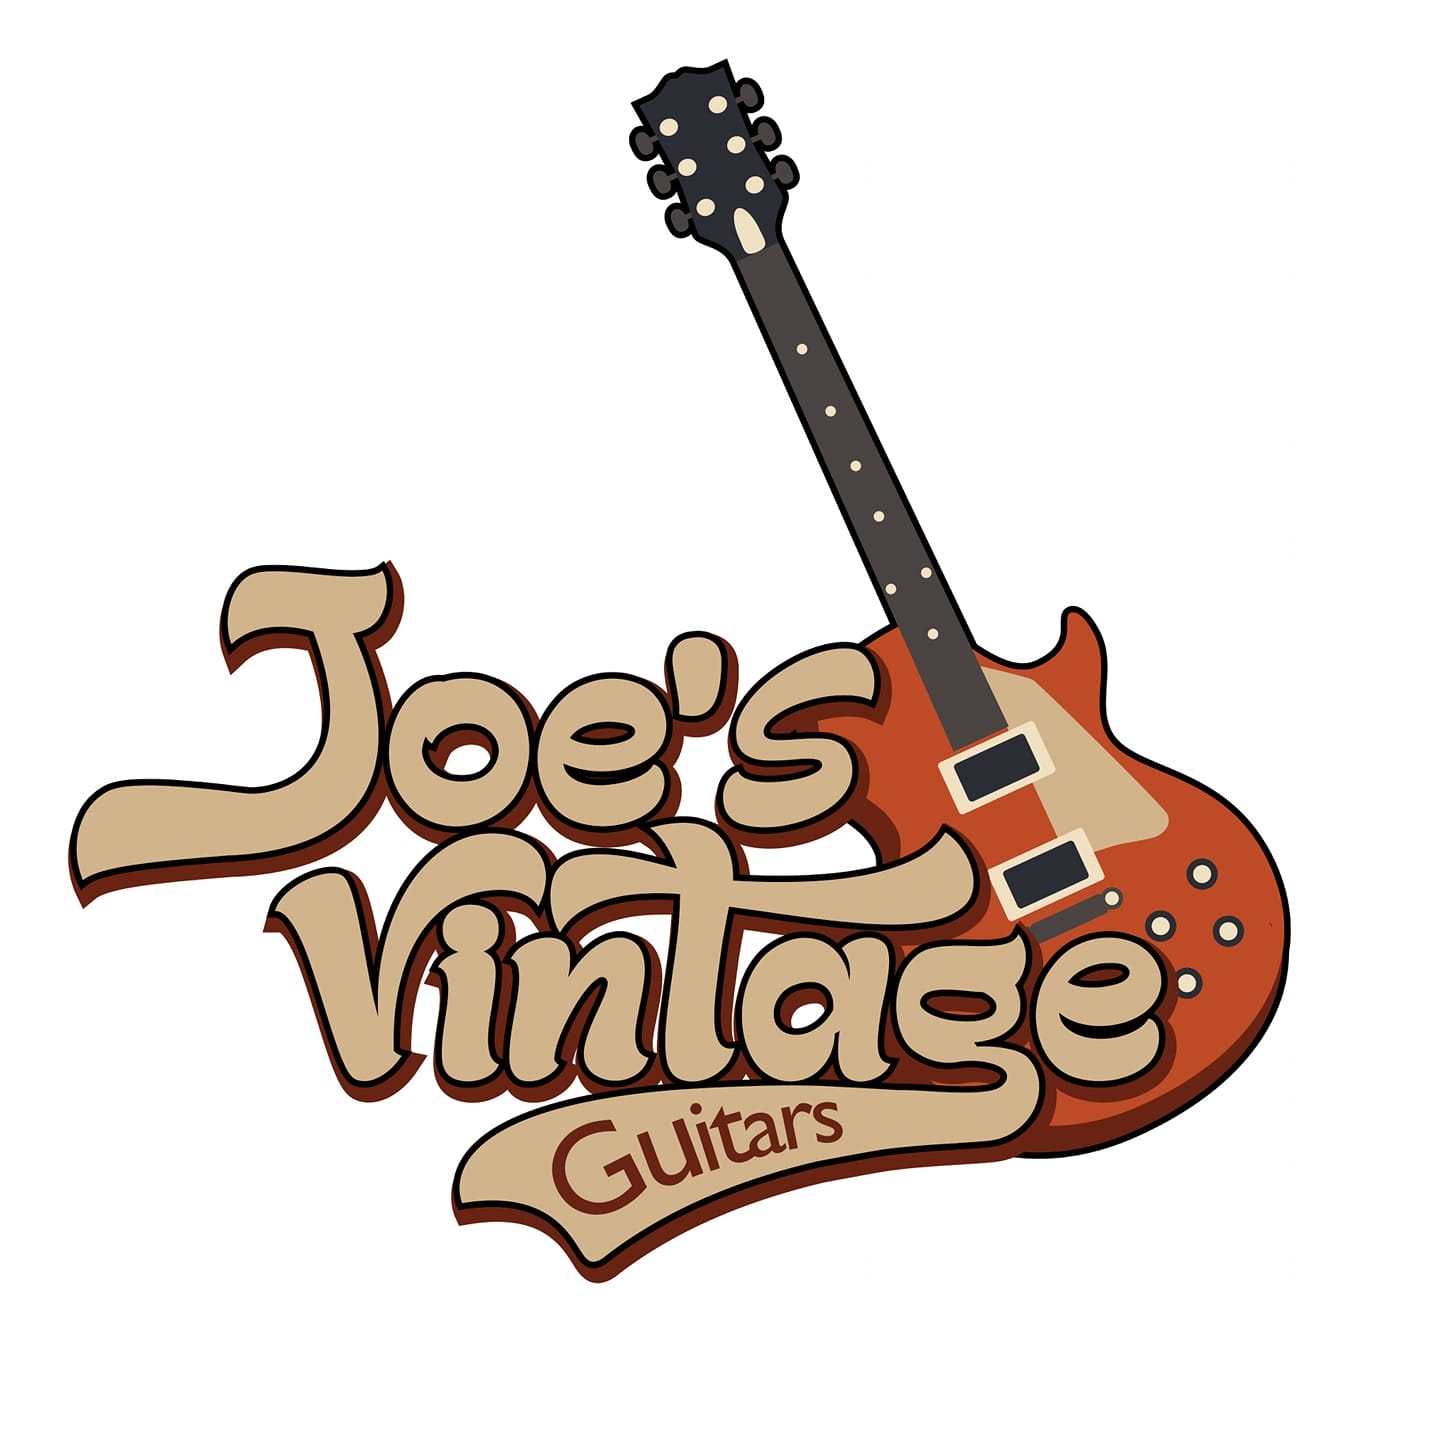 Joe's Vintage Guitars - We Buy Guitars!